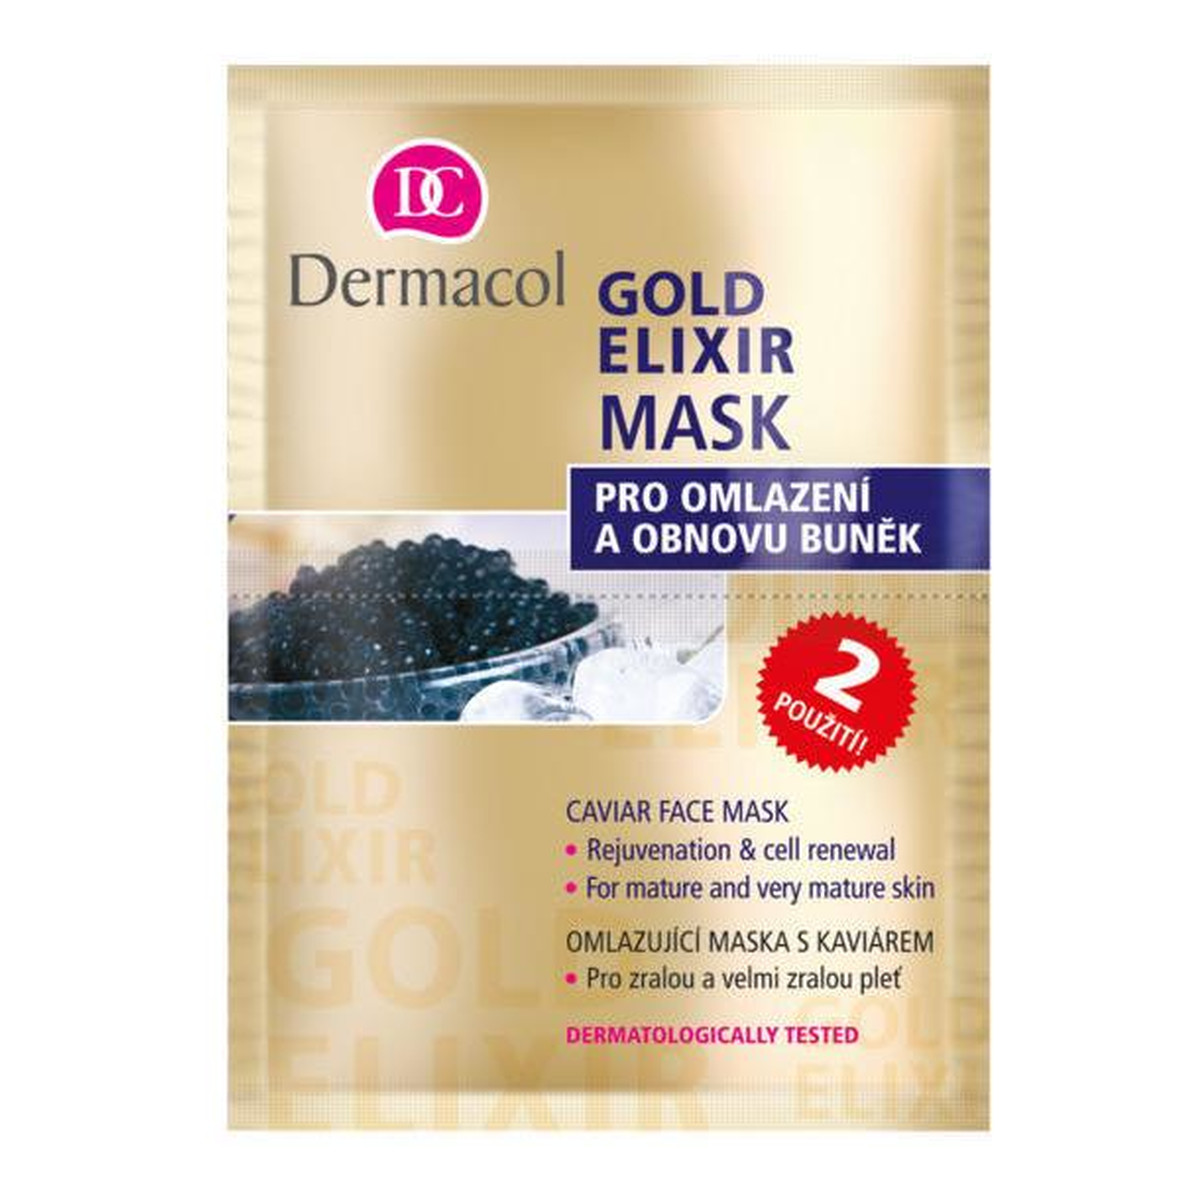 Dermacol Gold elixir caviar face mask maseczka do twarzy z kawiorem 2x8g 16g